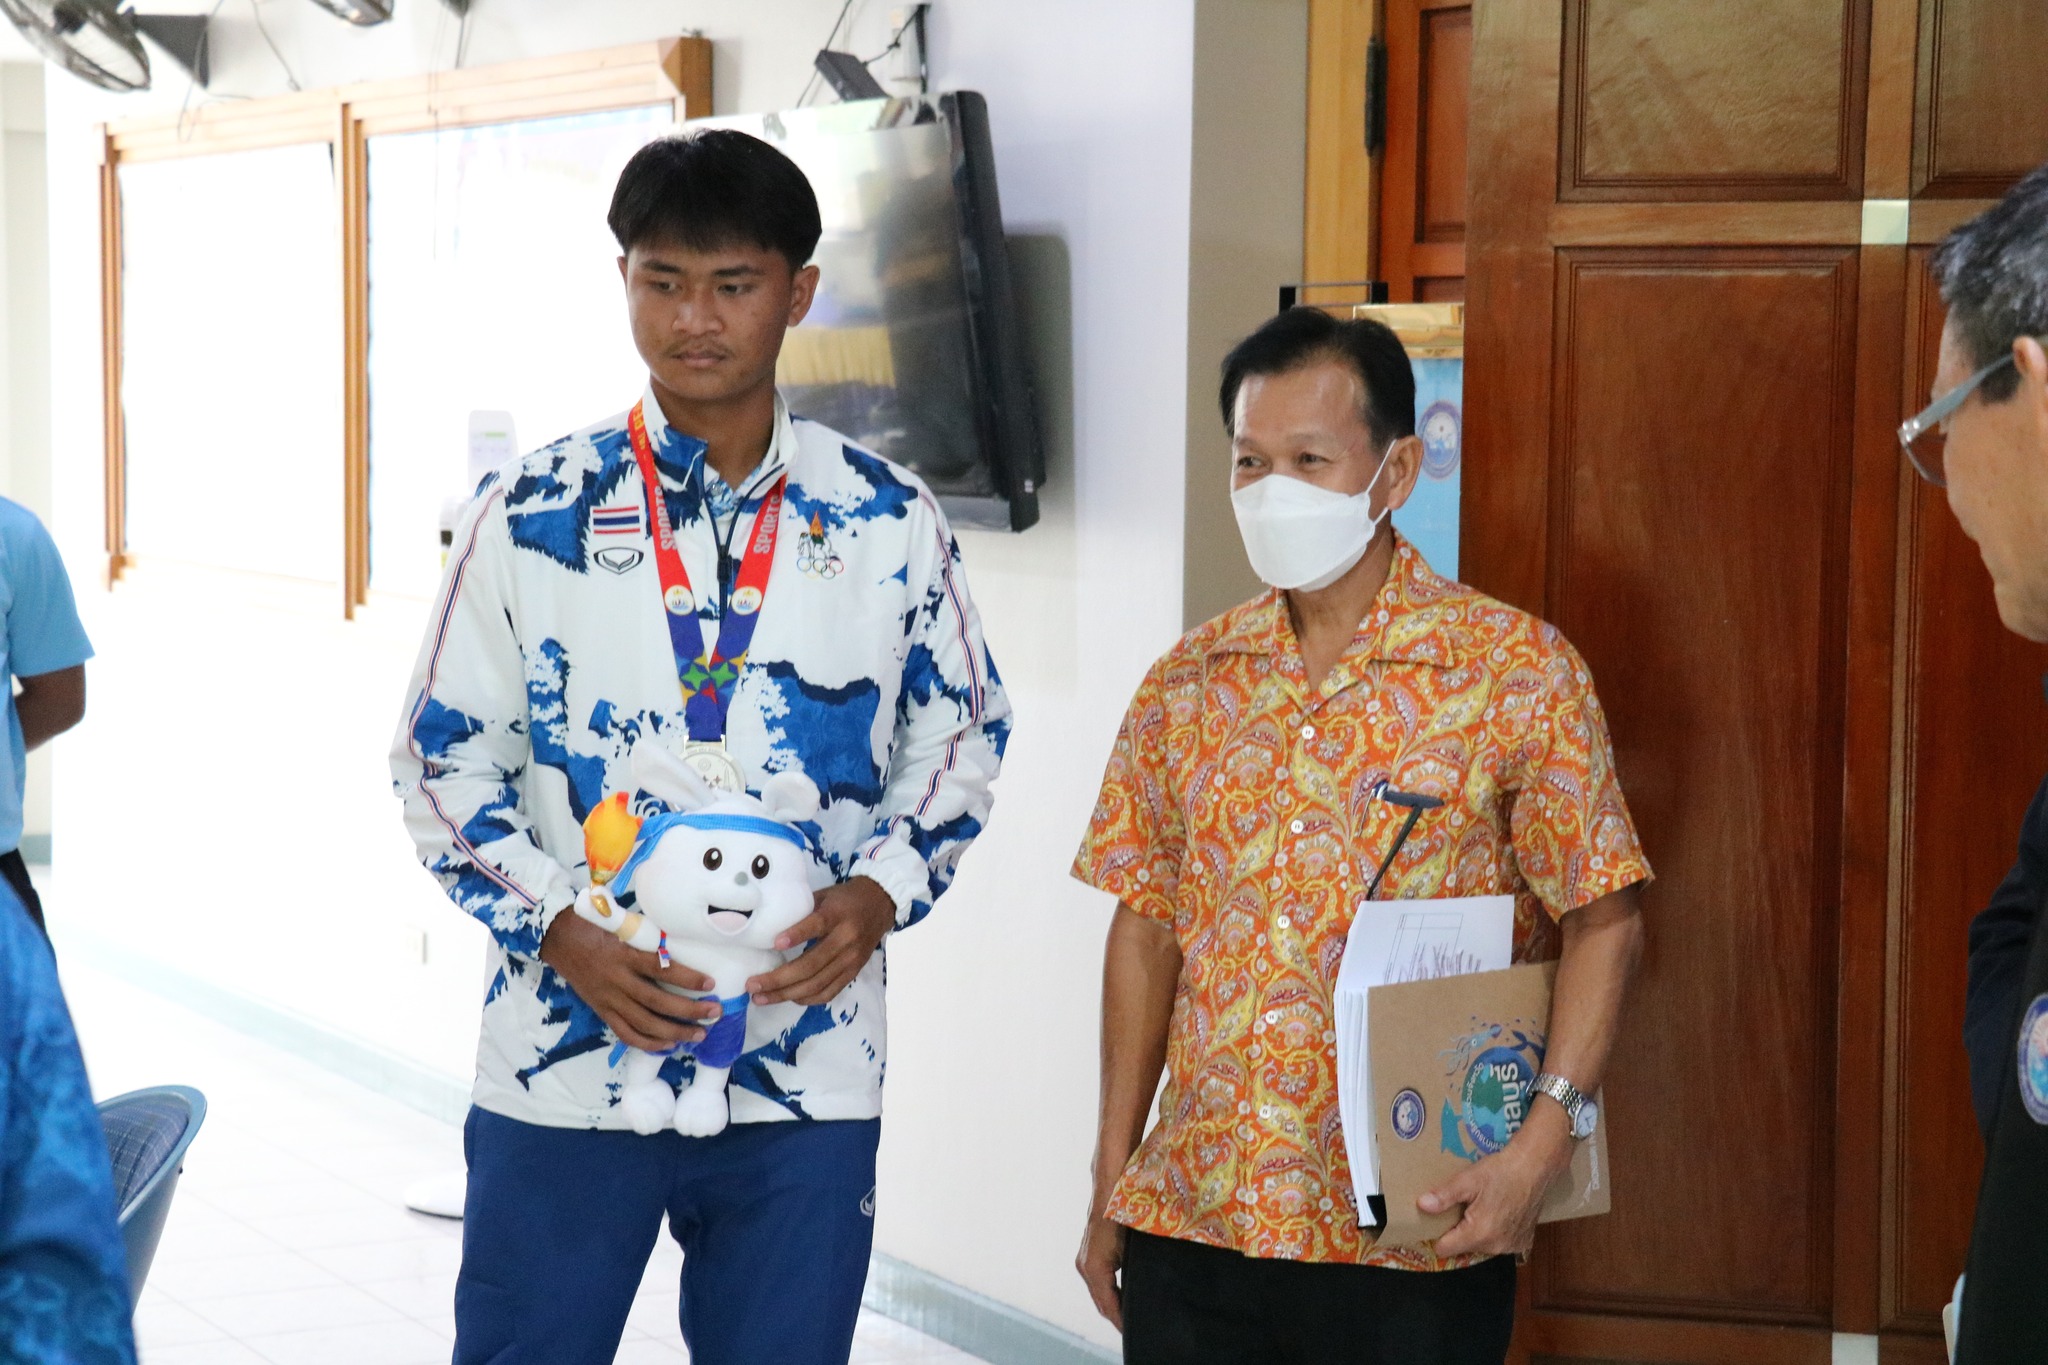 นายก อบจ.ชลบุรี ร่วมแสดงความยินดีกับนักเรียน รร.พลูตาหลวงวิทยา ที่คว้ารางวัลจากการแข่งขันกีฬาซีเกมส์ ครั้งที่ 32 และให้กำลังใจแก่นักกีฬาเรือใบที่จะไปชิงแชมป์โลก ณ ประเทศสเปน